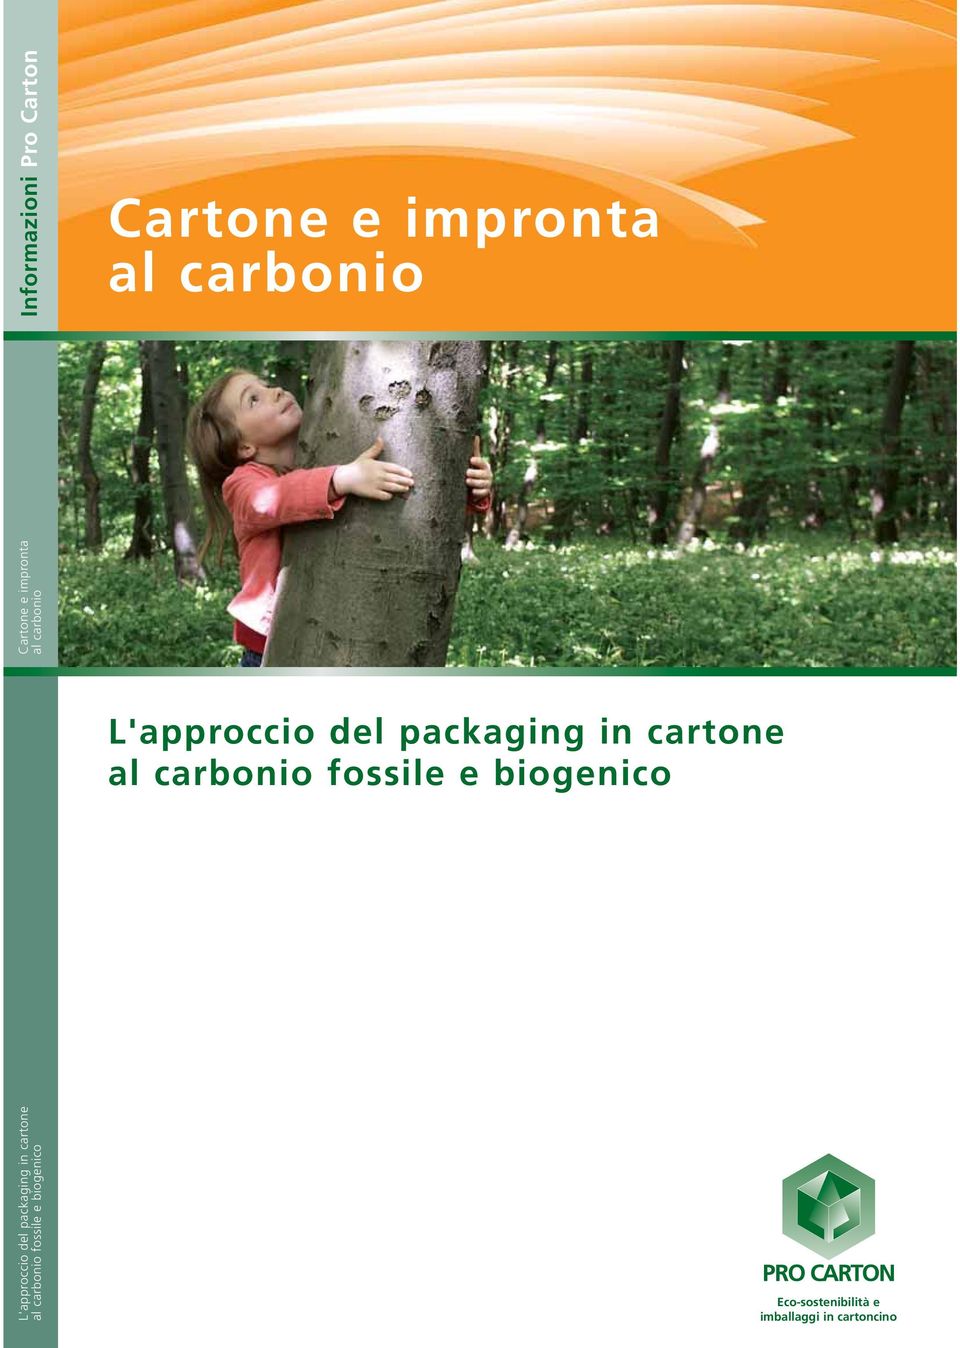 carbonio fossile e biogenico L'approccio del packaging in carone